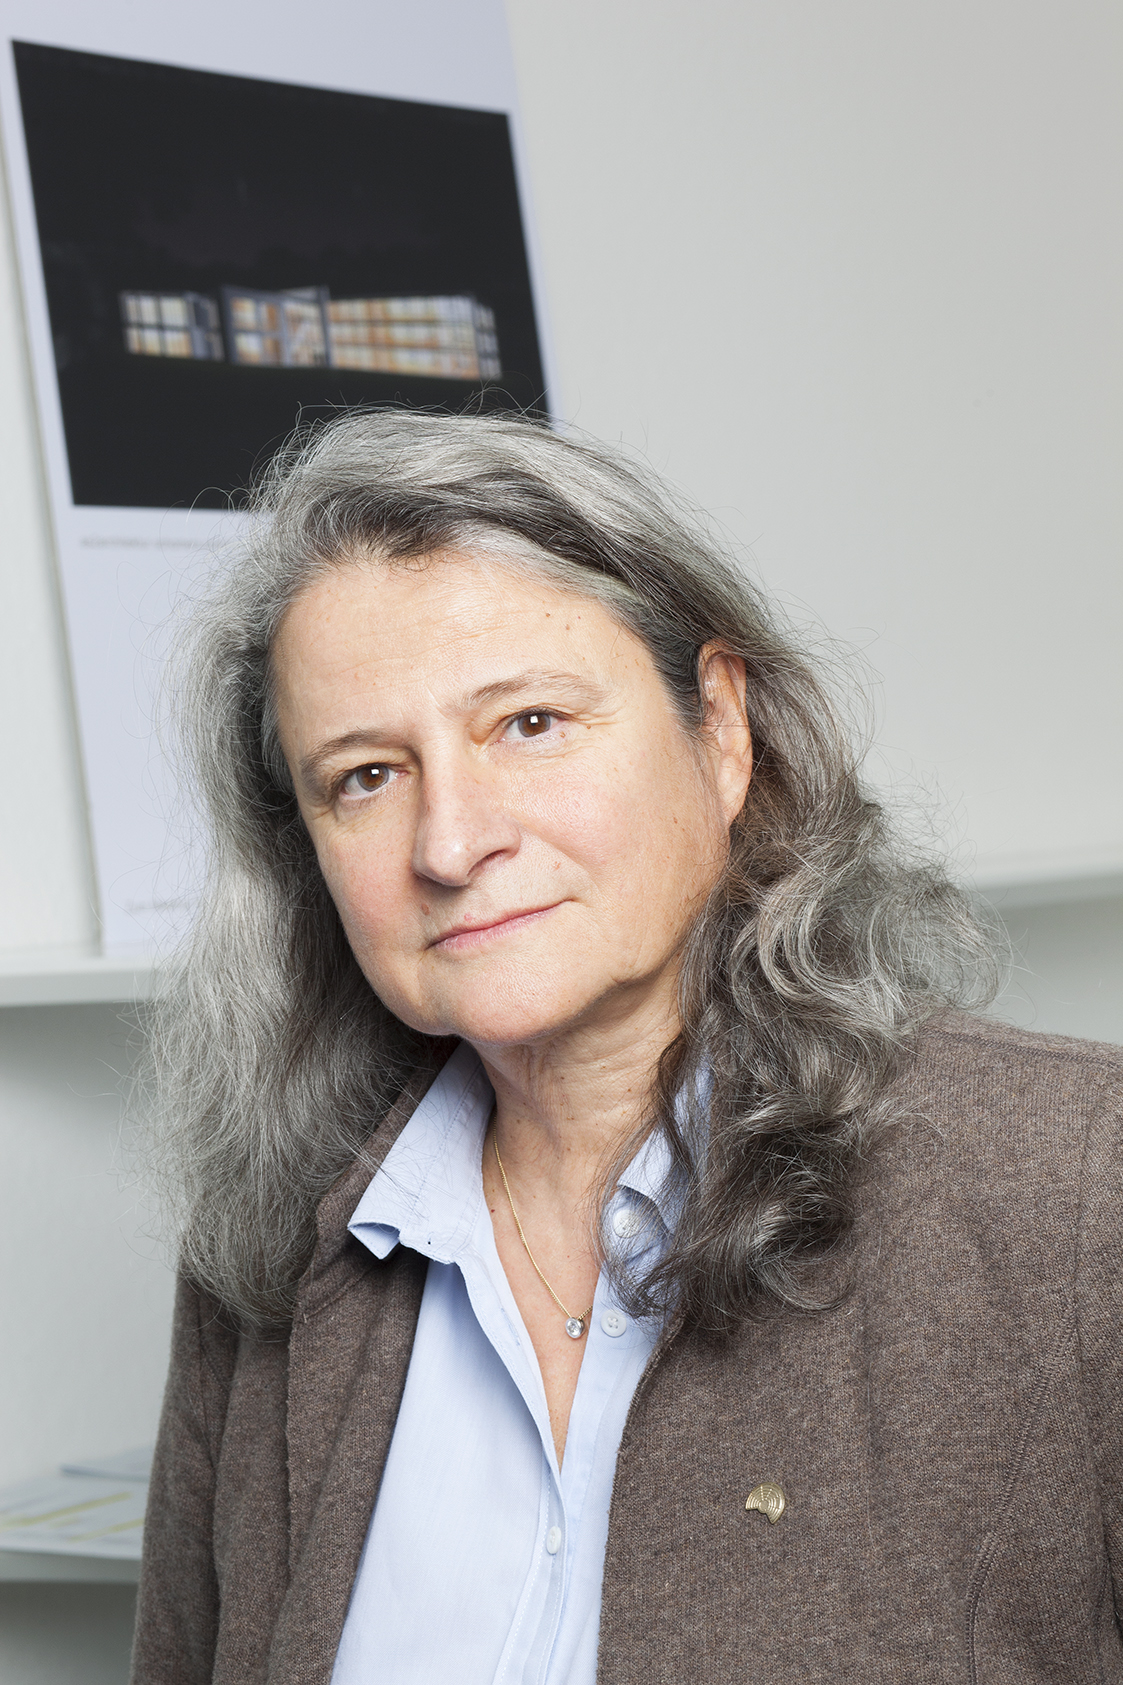 Porträtbild des Mitglieds des DFG-Präsidiums - Prof. Dr. Kerstin Schill